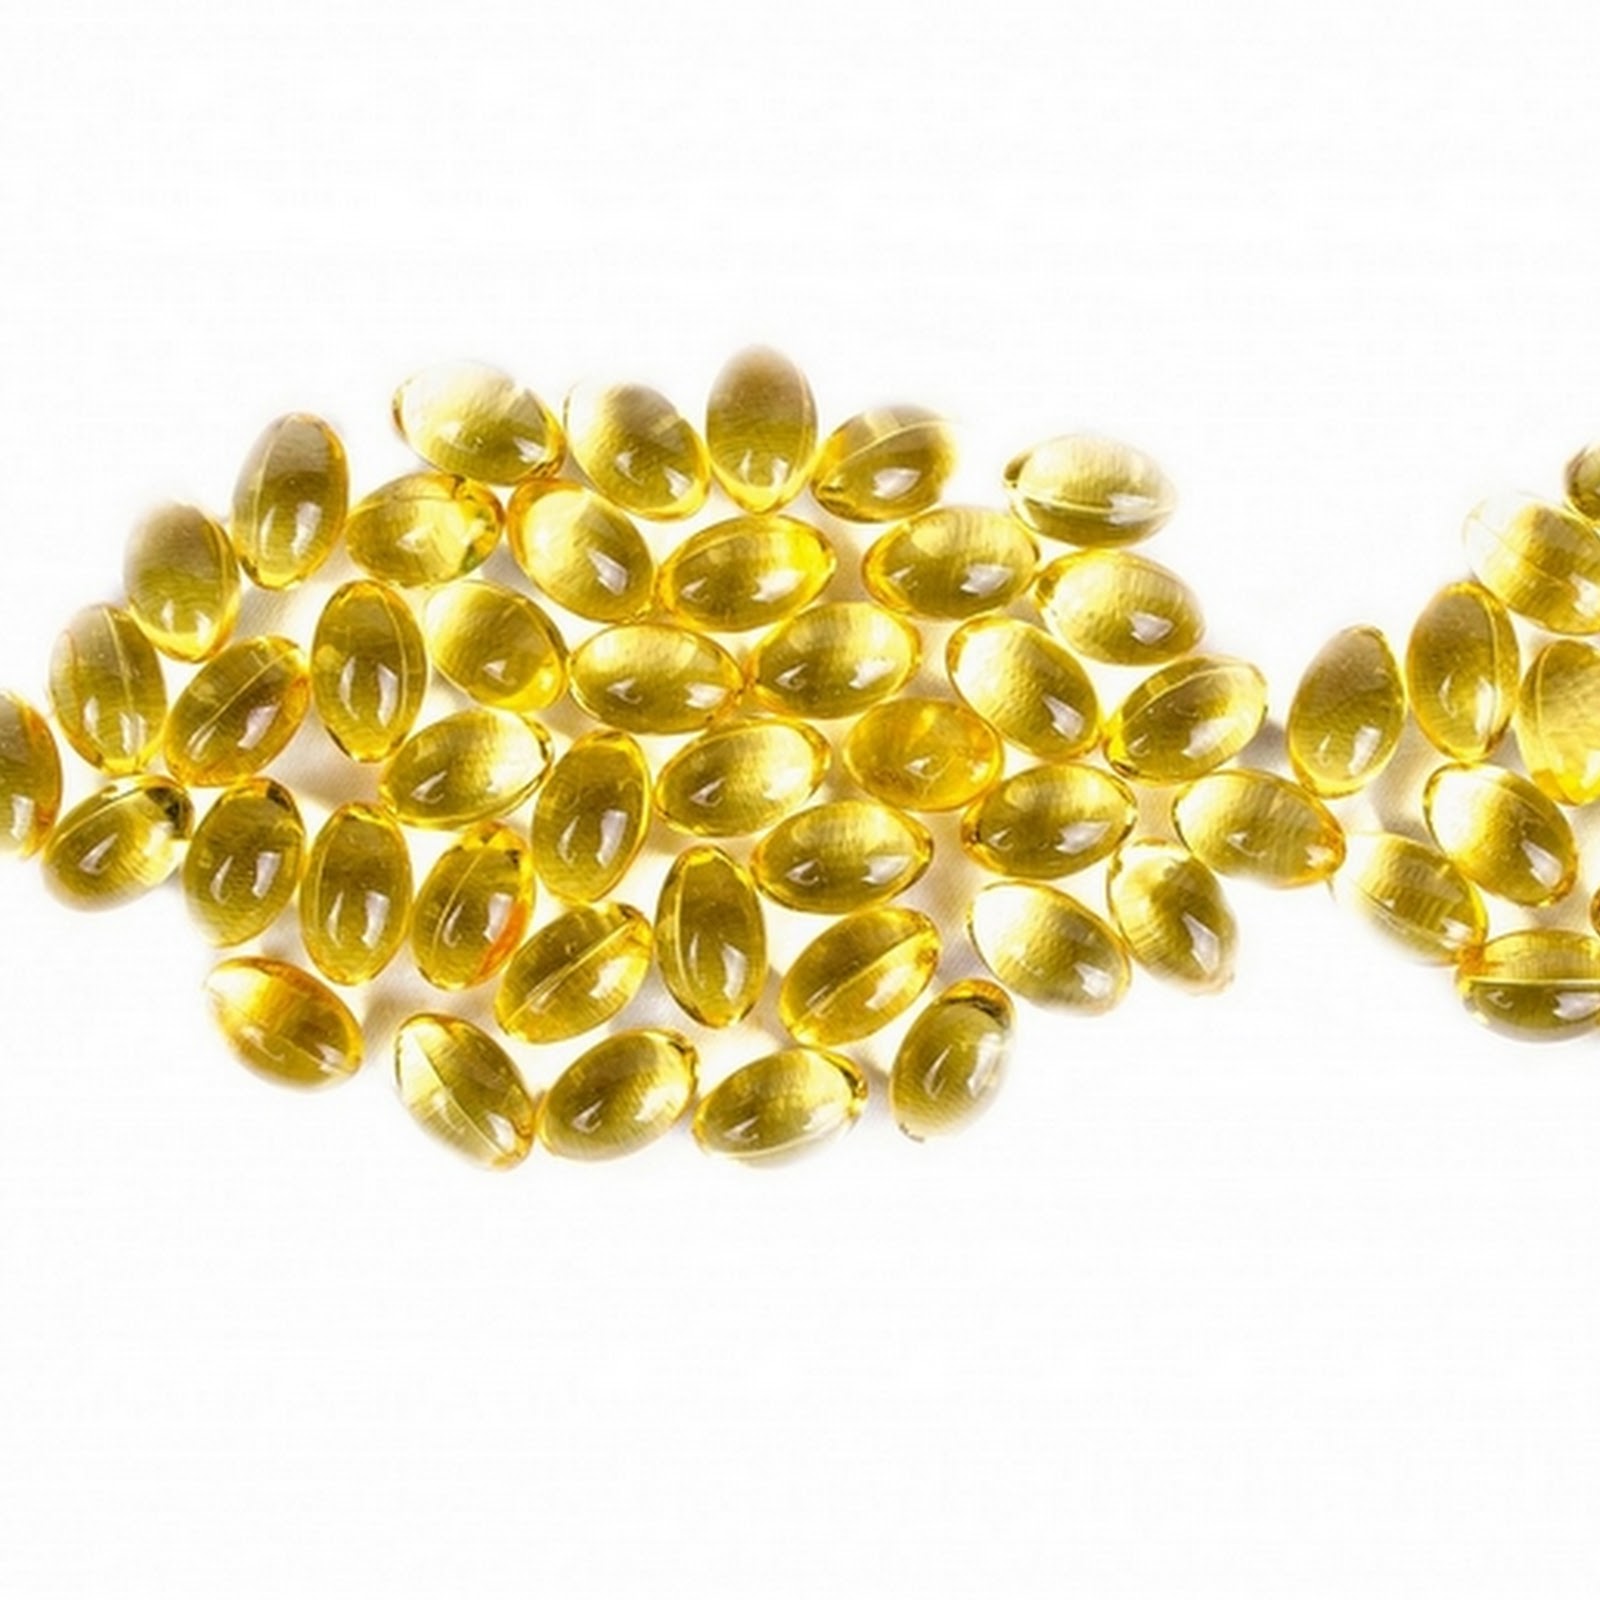 Co warto wiedzieć o omega-3 i omega-6? Najlepsze źródła naturalne, zapotrzebowanie, działanie korzystne i szkodliwe. 